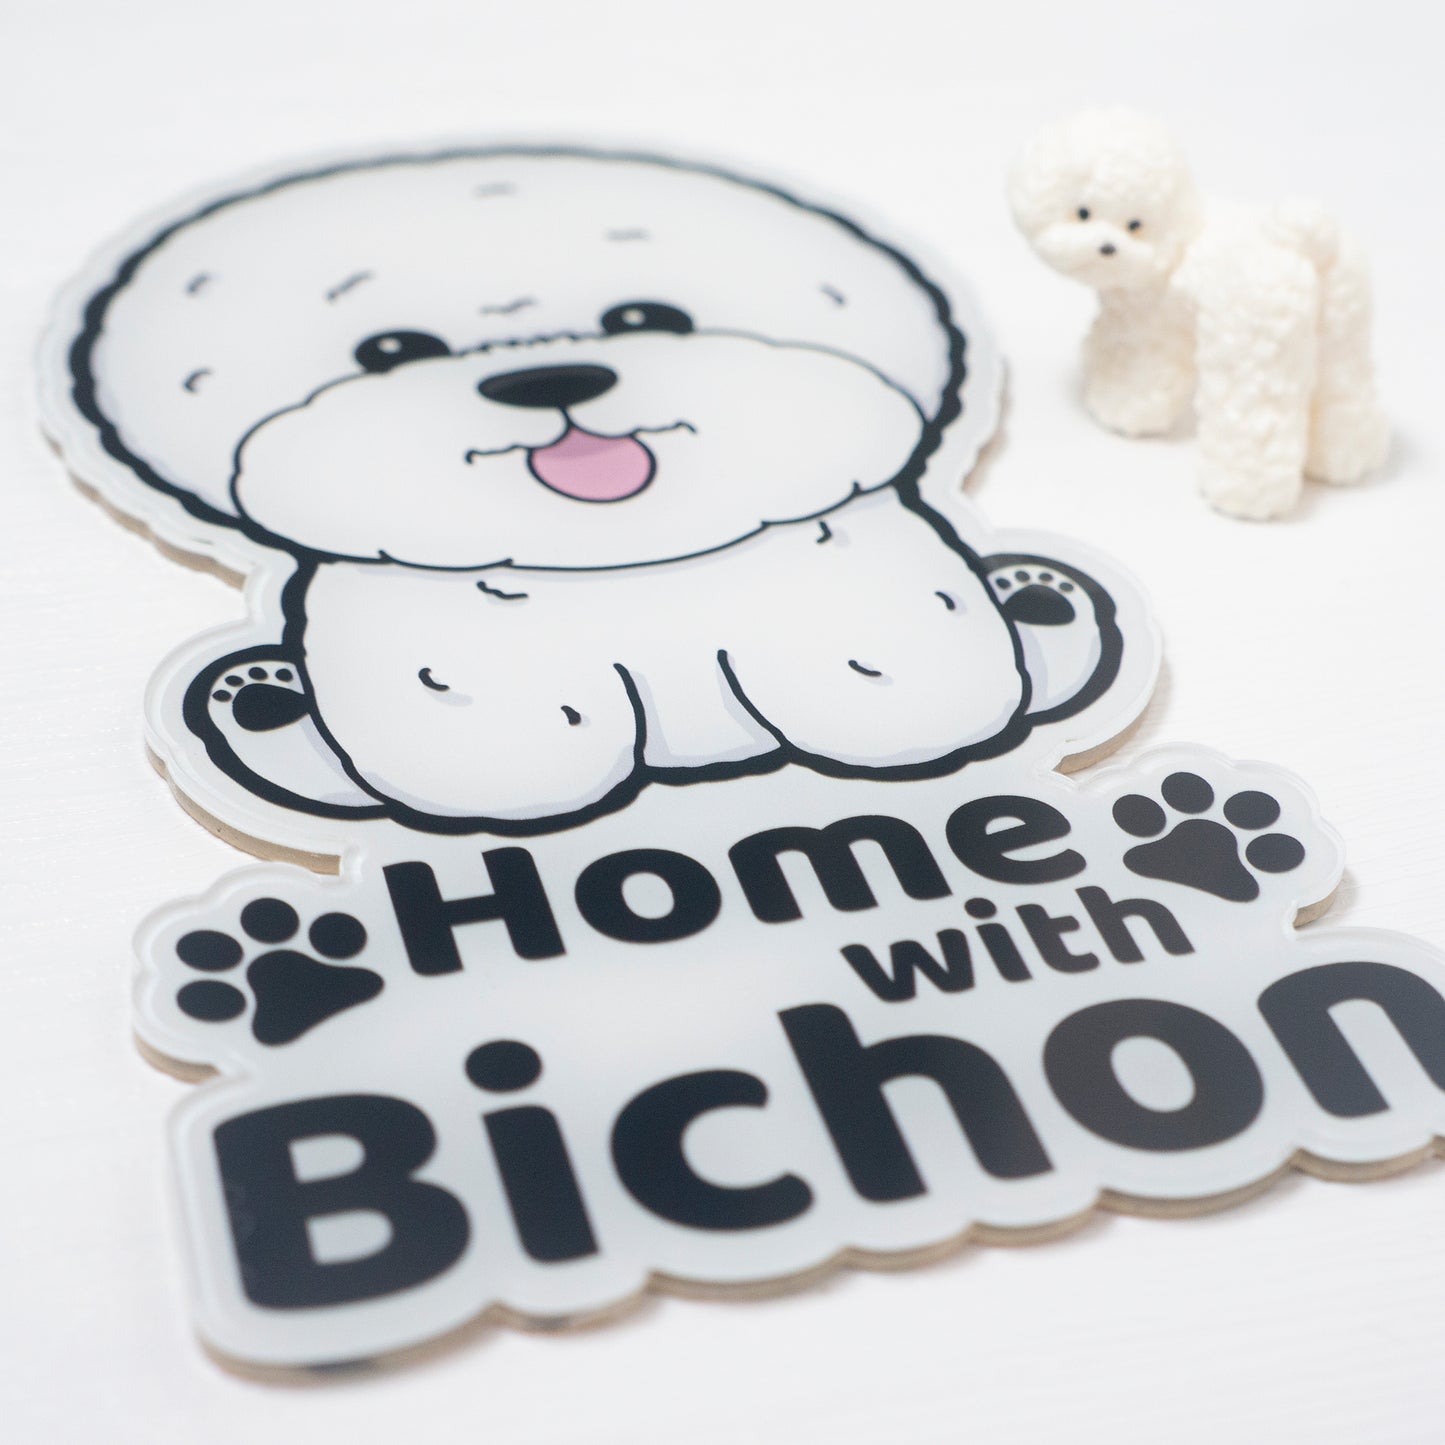 Home with Bichon 比熊門牌